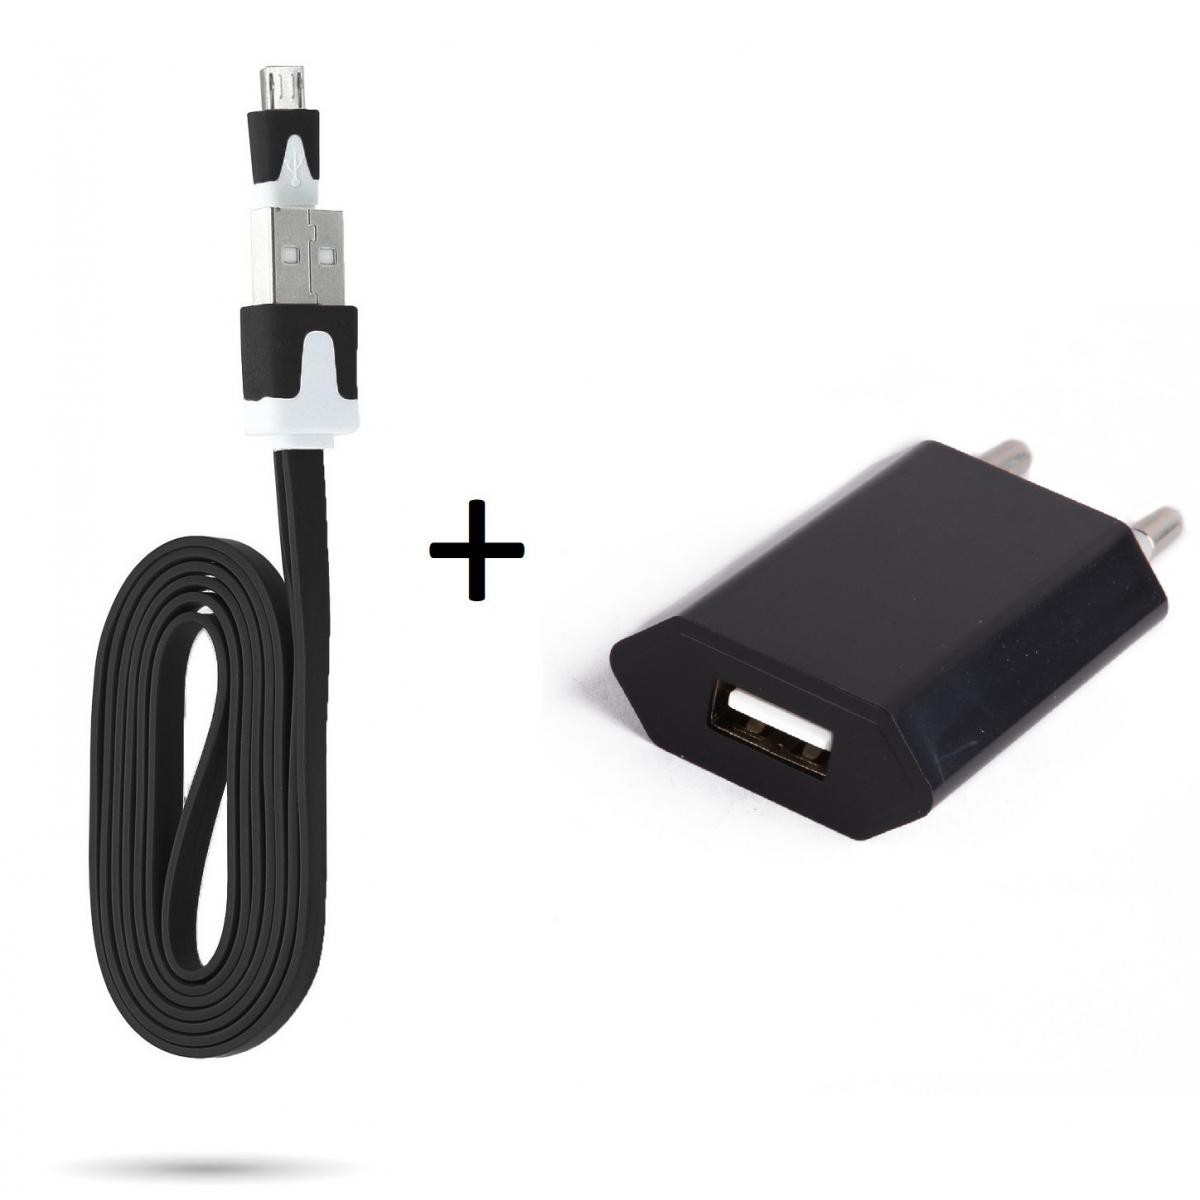 Shot - Cable Noodle 1m Chargeur + Prise Secteur pour WIKO Y60 Smartphone Micro USB Murale Pack Android (NOIR) - Chargeur secteur téléphone